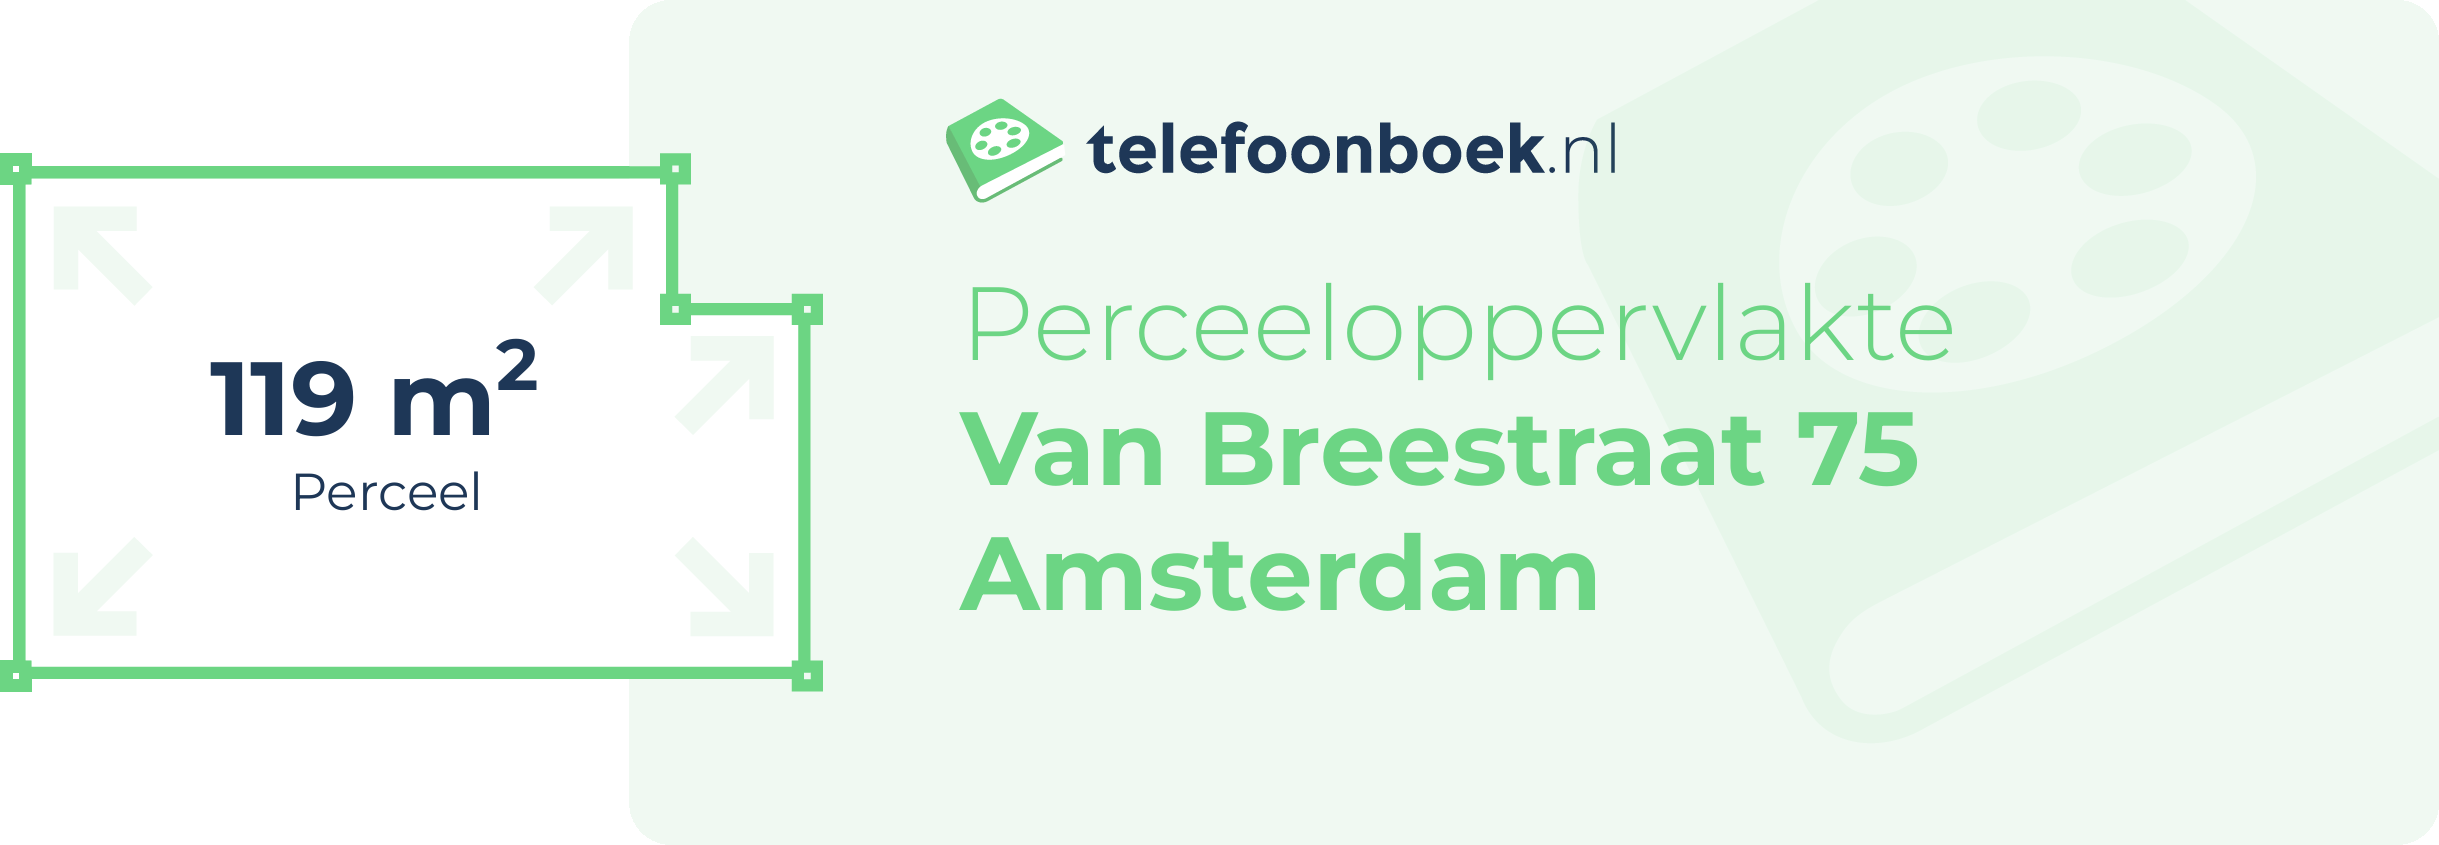 Perceeloppervlakte Van Breestraat 75 Amsterdam